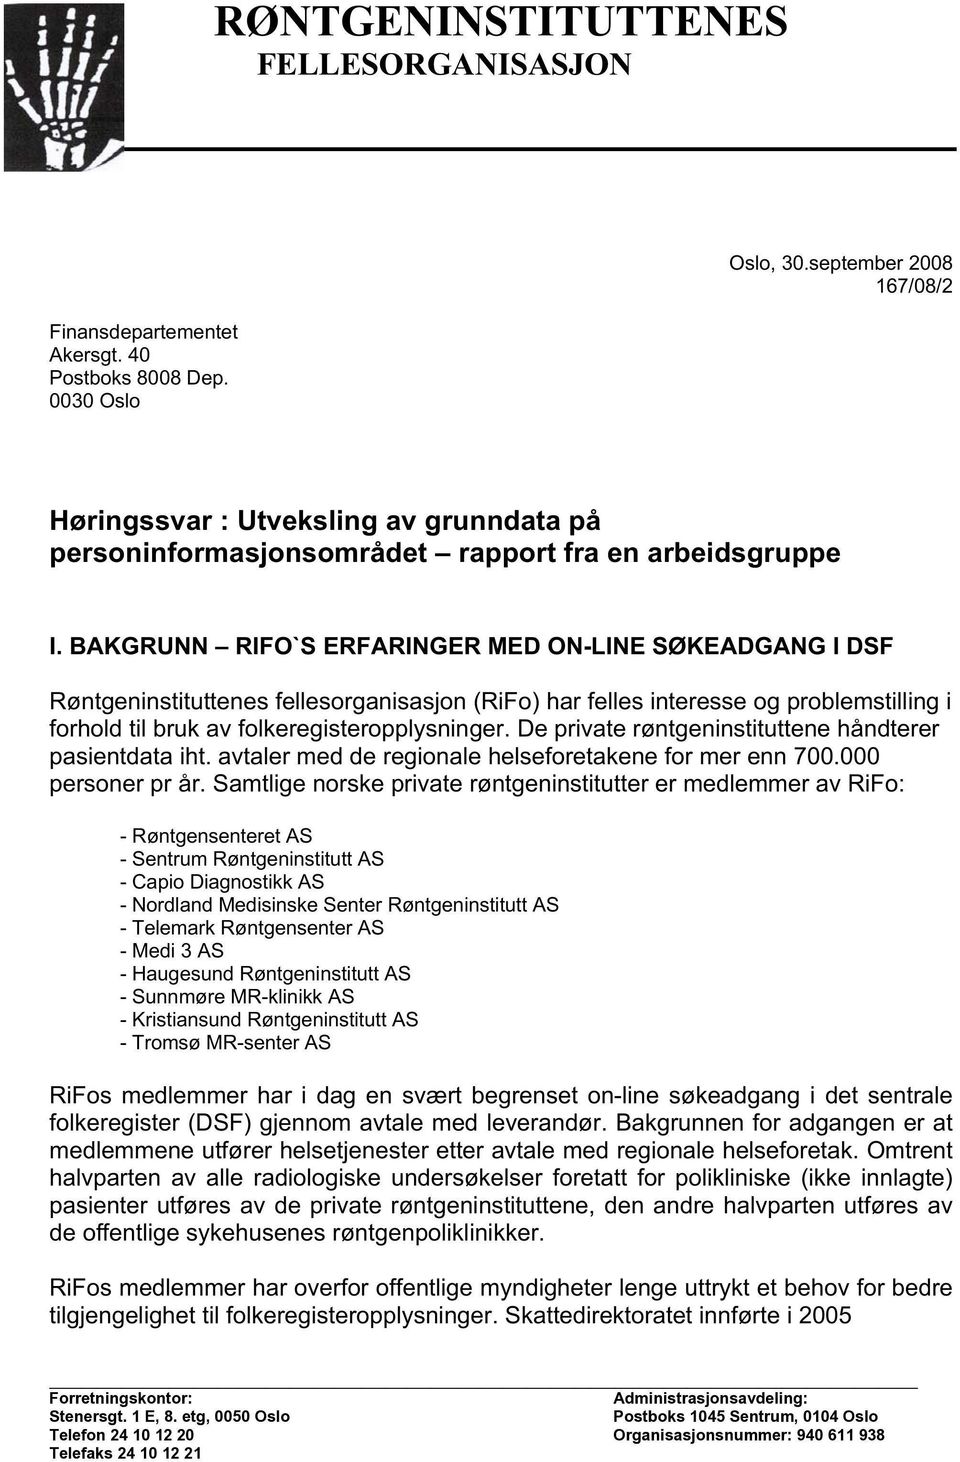 BAKGRUNN - RIFO'S ERFARINGER MED ON-LINE SØKEADGANG I DSF Røntgeninstituttenes fellesorganisasjon (RiFo) har felles interesse og problemstilling i forhold til bruk av folkeregisteropplysninger.